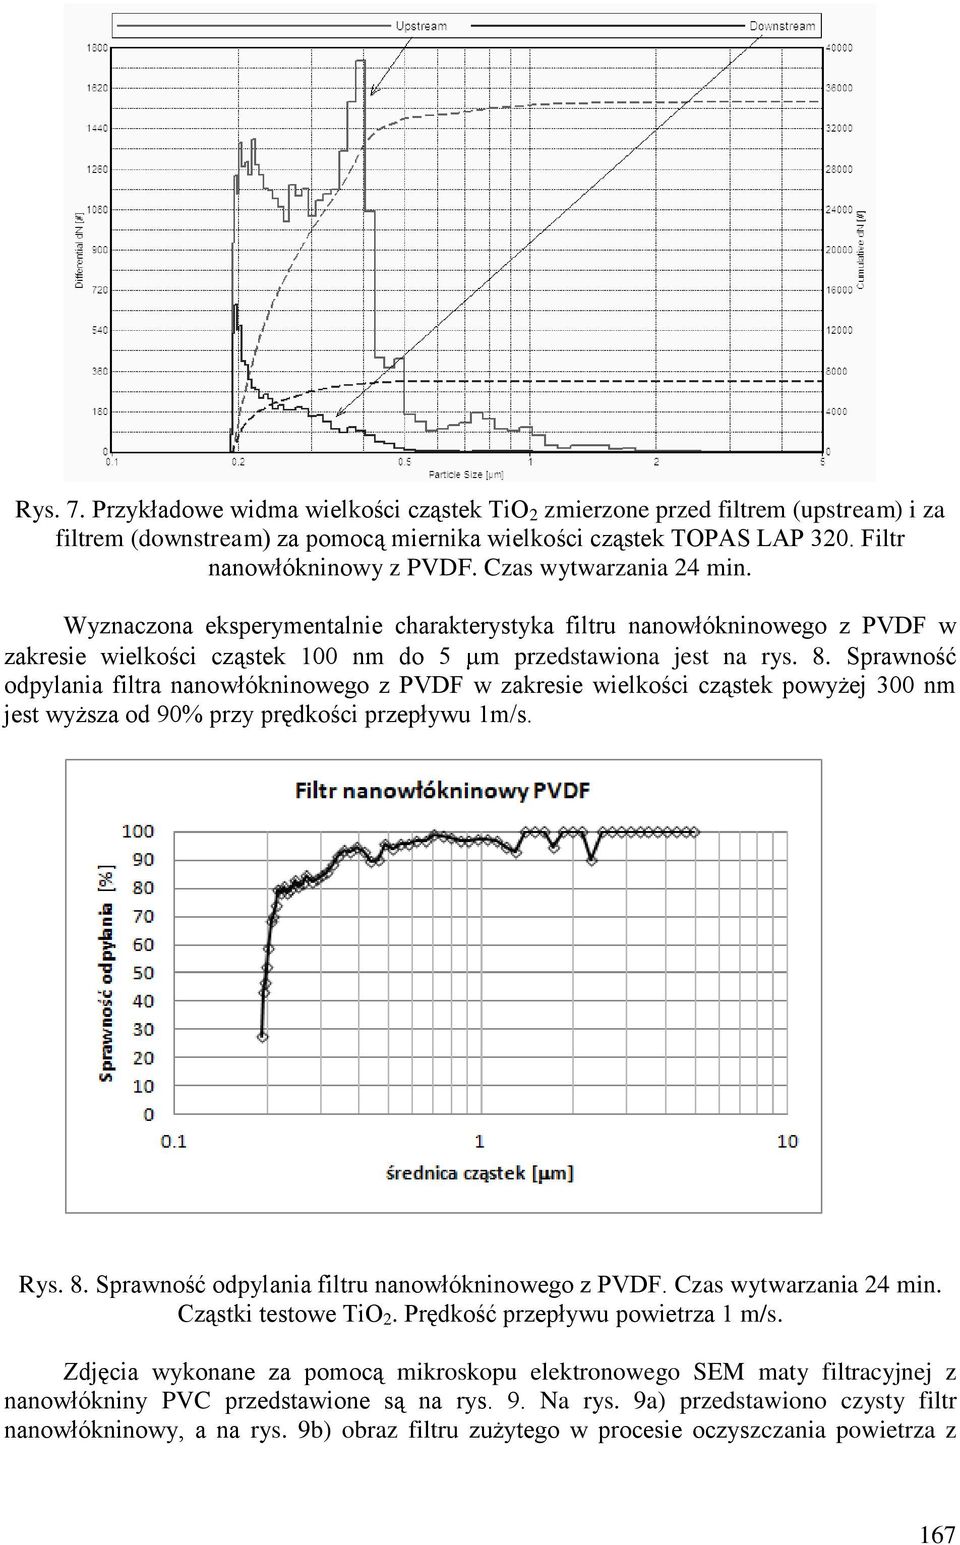 Sprawność odpylania filtra nanowłókninowego z PVDF w zakresie wielkości cząstek powyżej 300 nm jest wyższa od 90% przy prędkości przepływu 1m/s. Rys. 8.